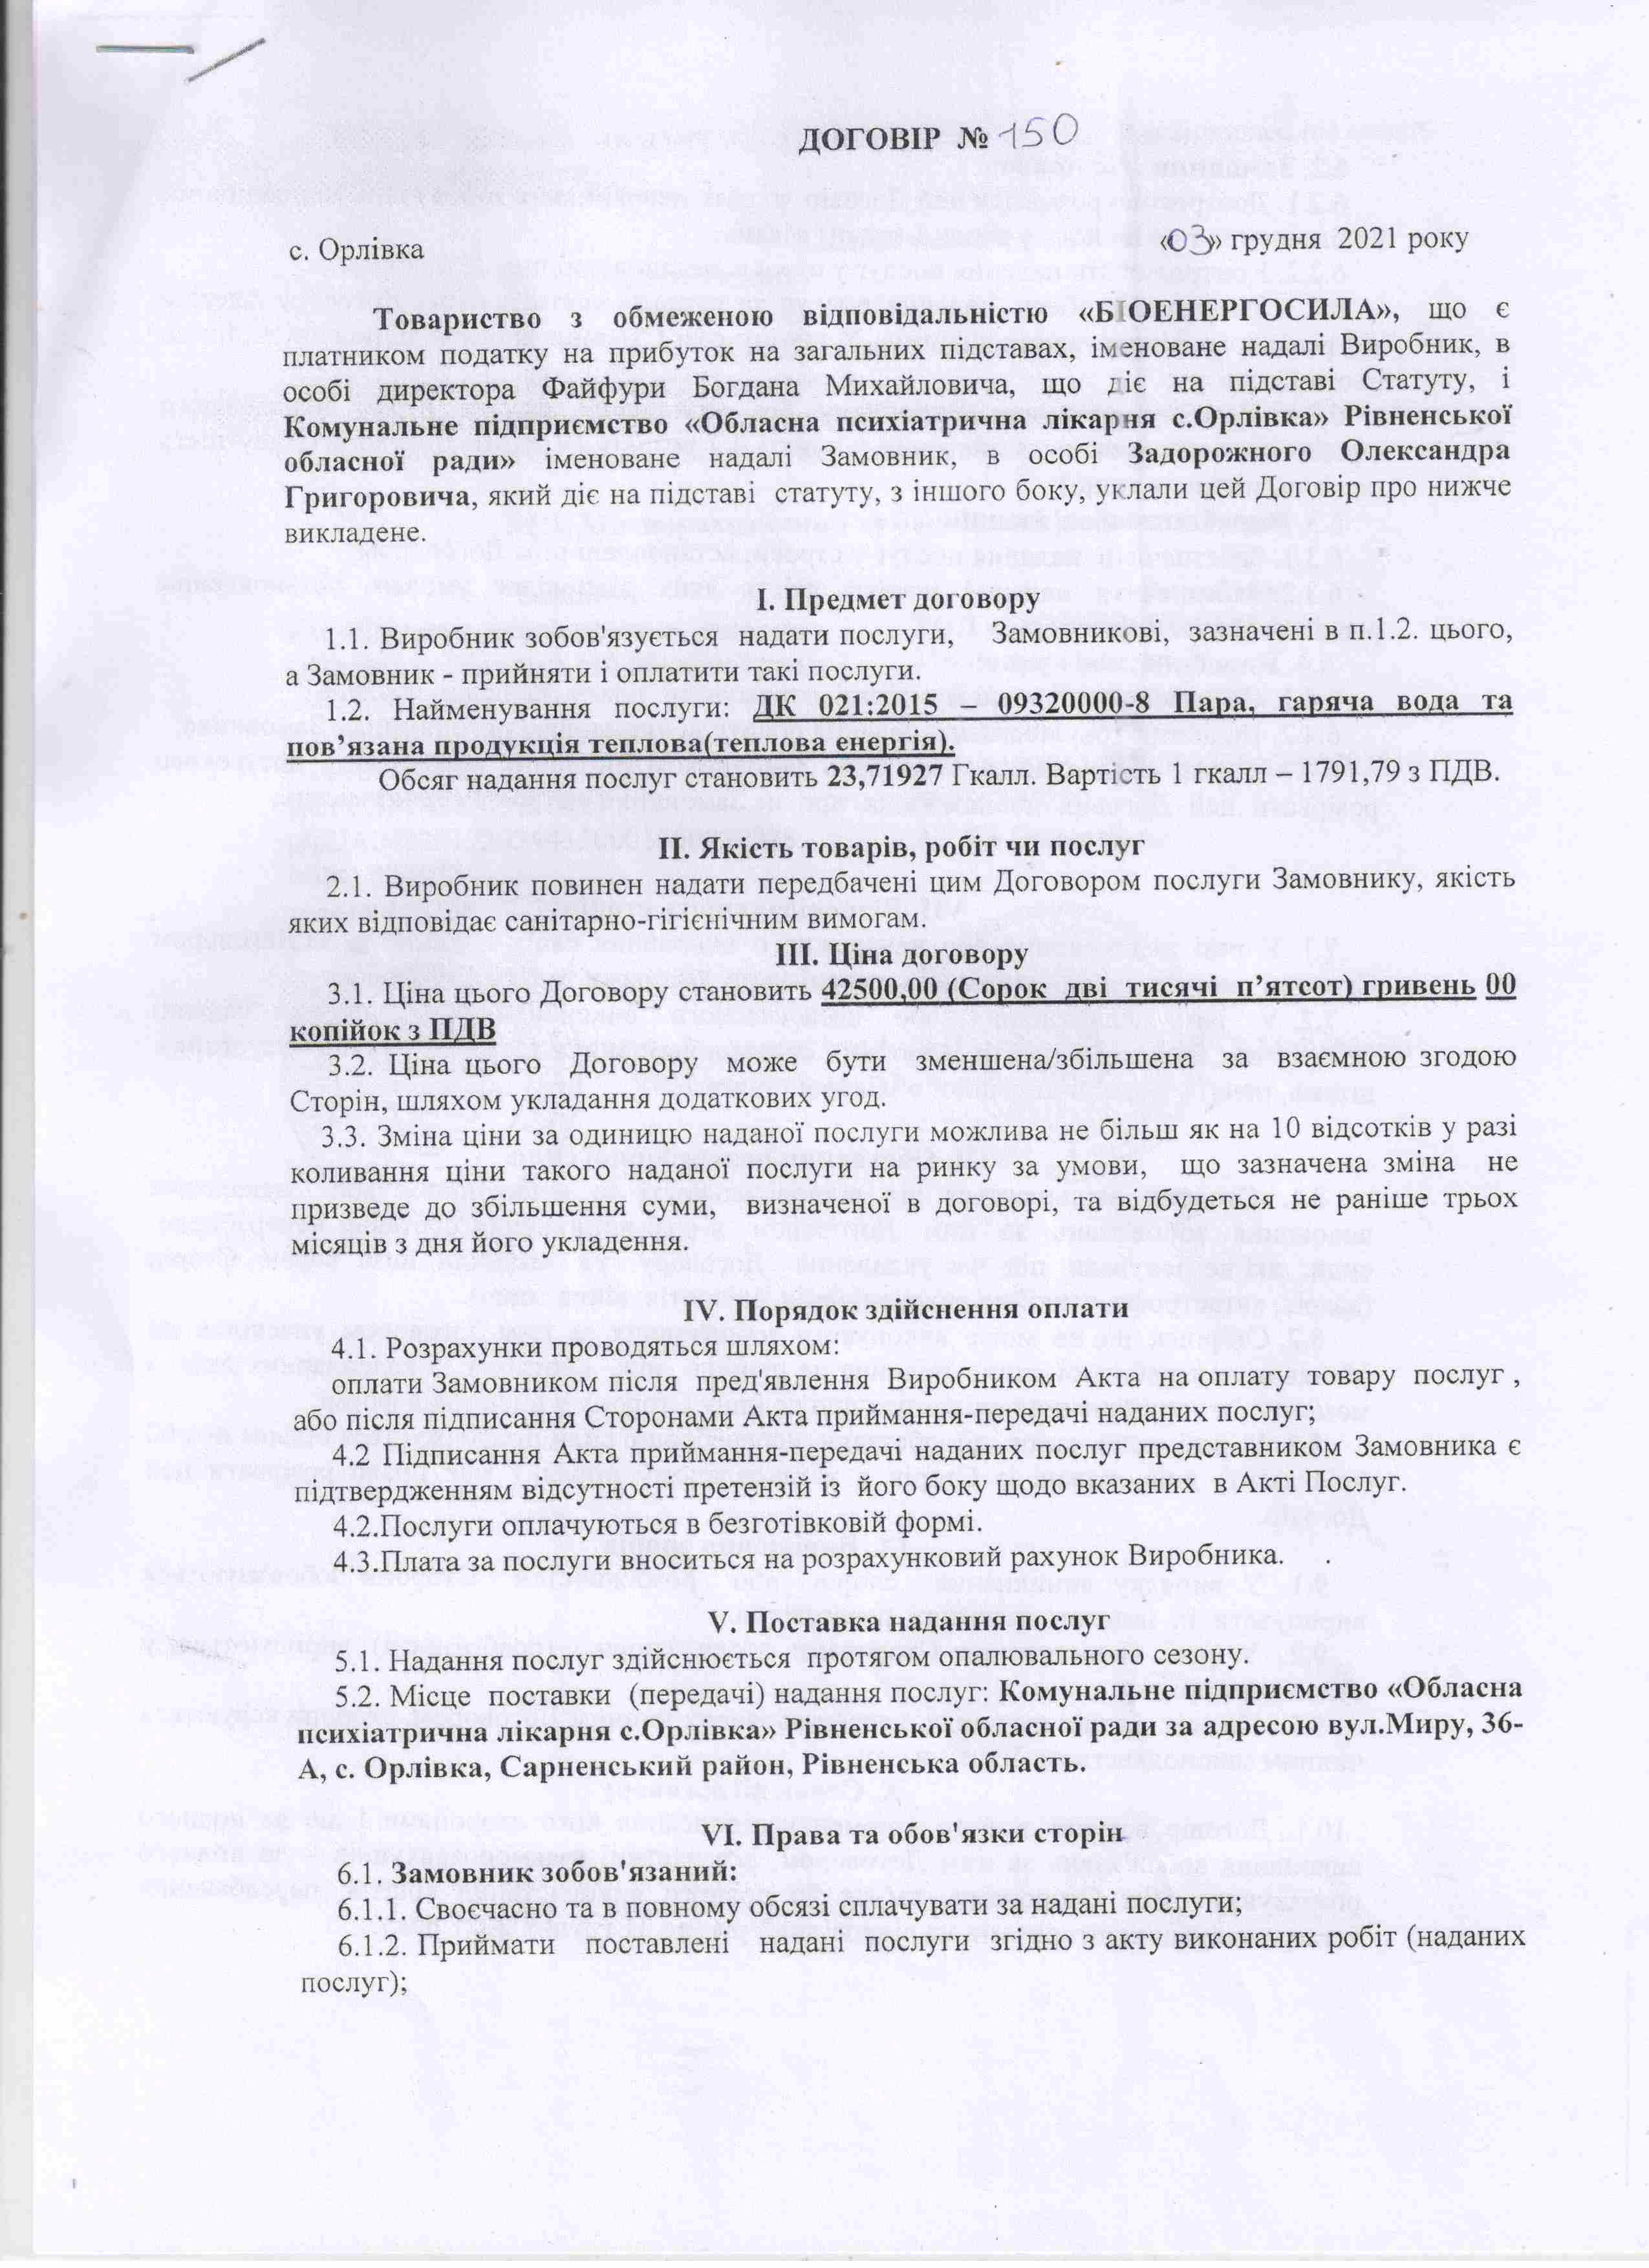 Договір №150 від 03.12.2021 р.